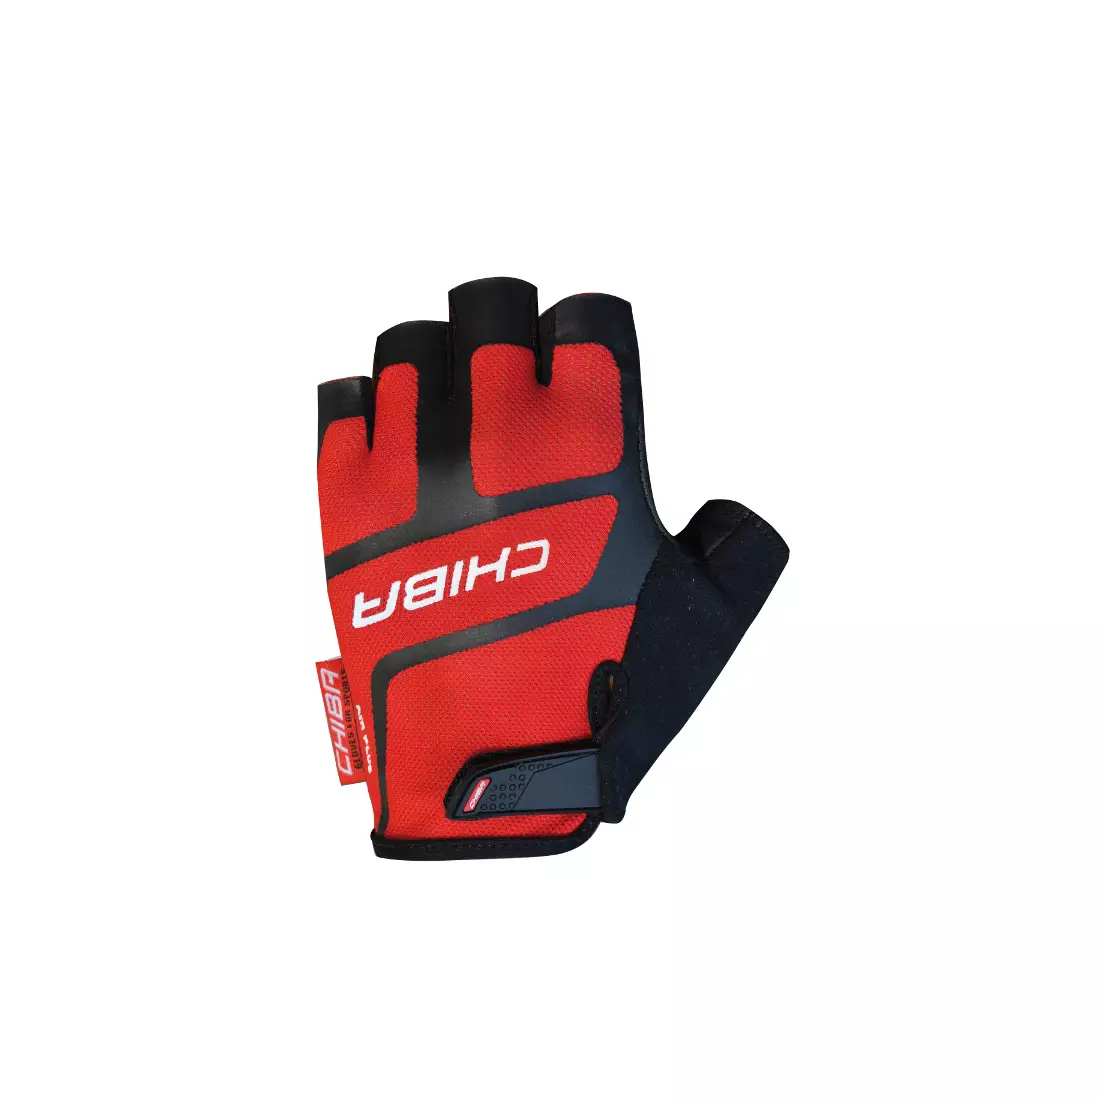 CHIBA PROFESSIONAL pánské cyklistické rukavice, červené